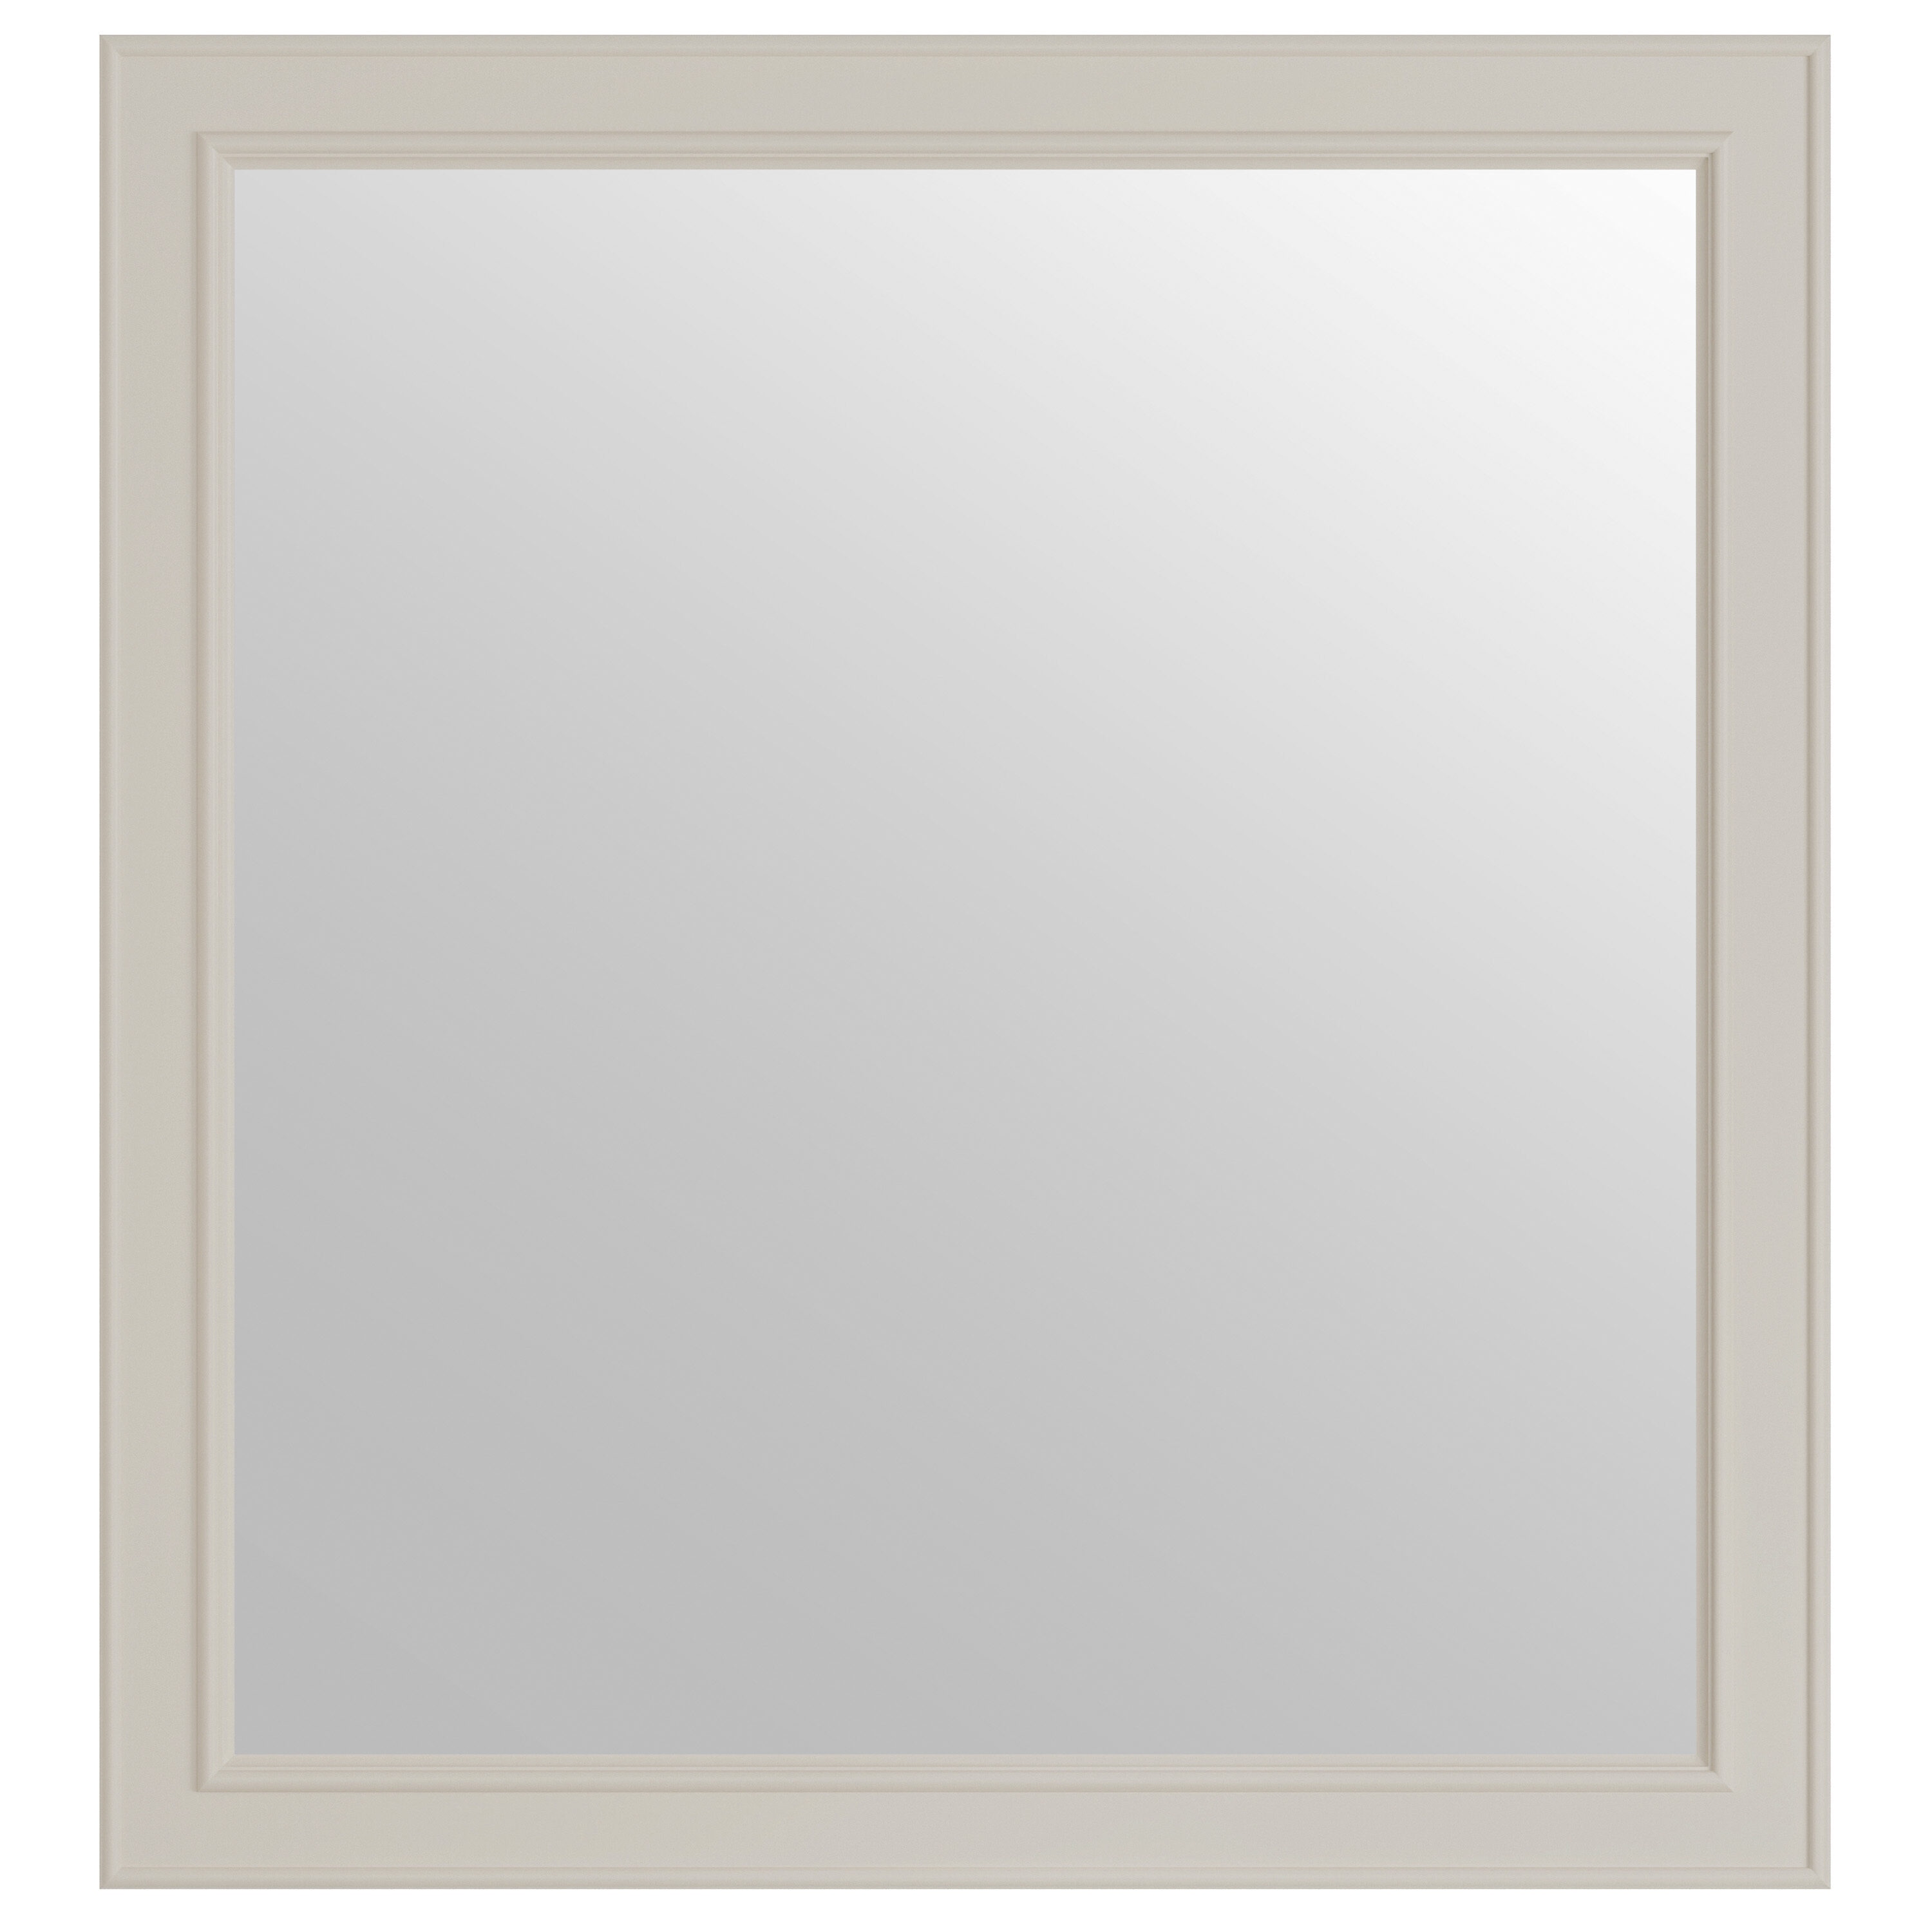 Wrightsville 28-in x 30-in Flaxen Rectangular Framed Bathroom Vanity Mirror in Off-White | - allen + roth 1116MR-28-320